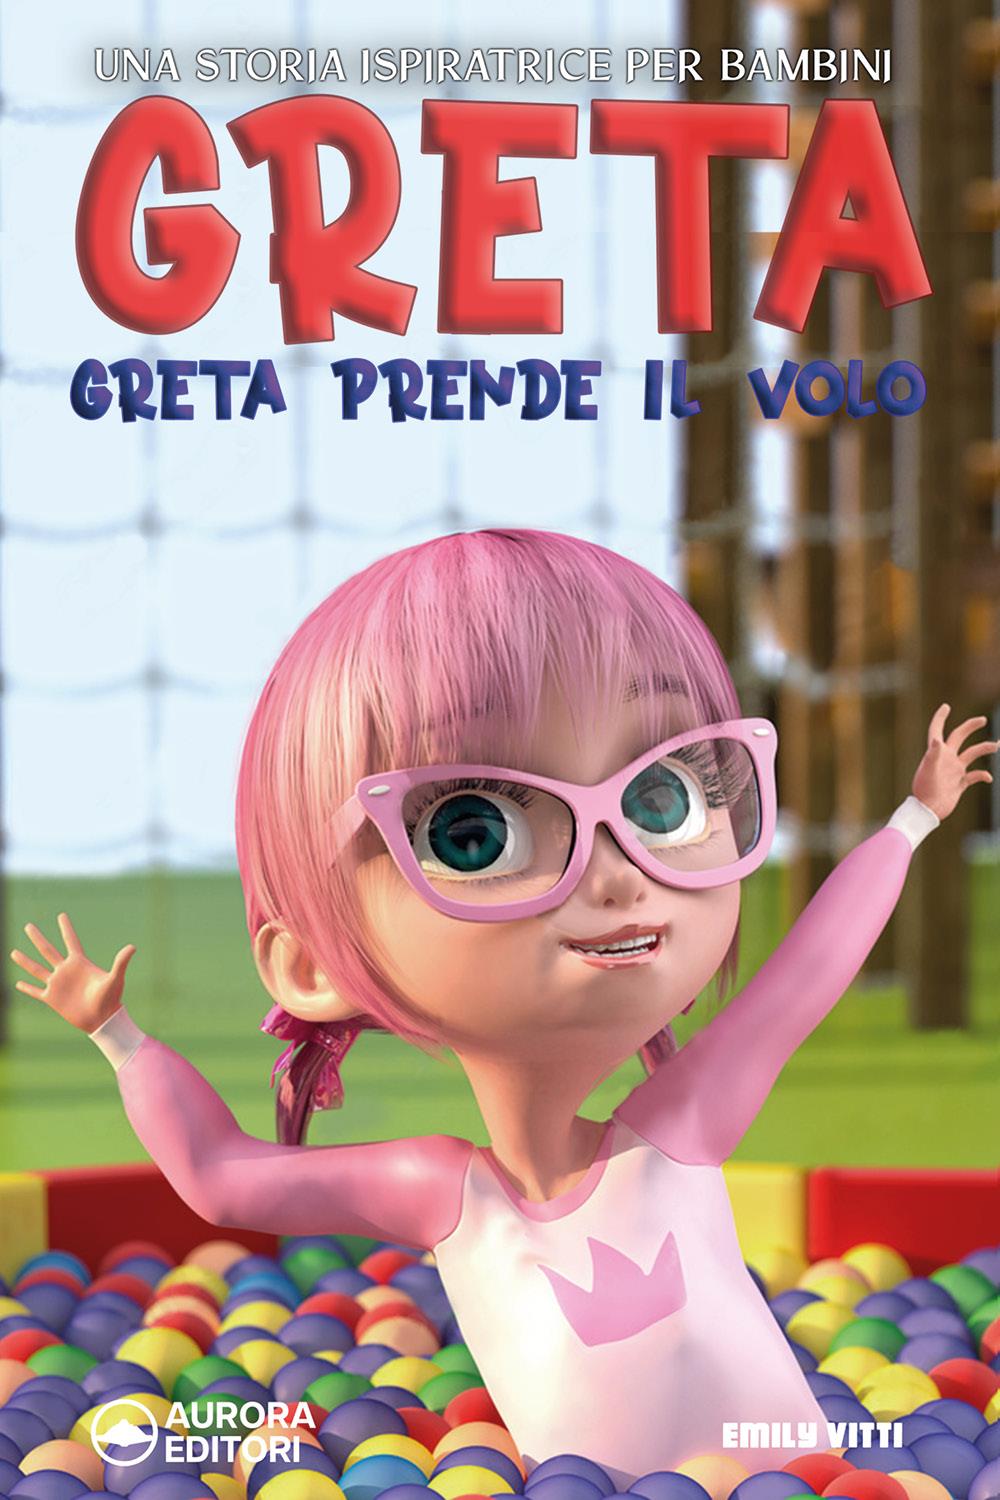 Greta Prende Il Volo: Una storia ispiratrice per bambini sull’amicizia, la fiducia in se stessi e la forza di essere proprio come si è!